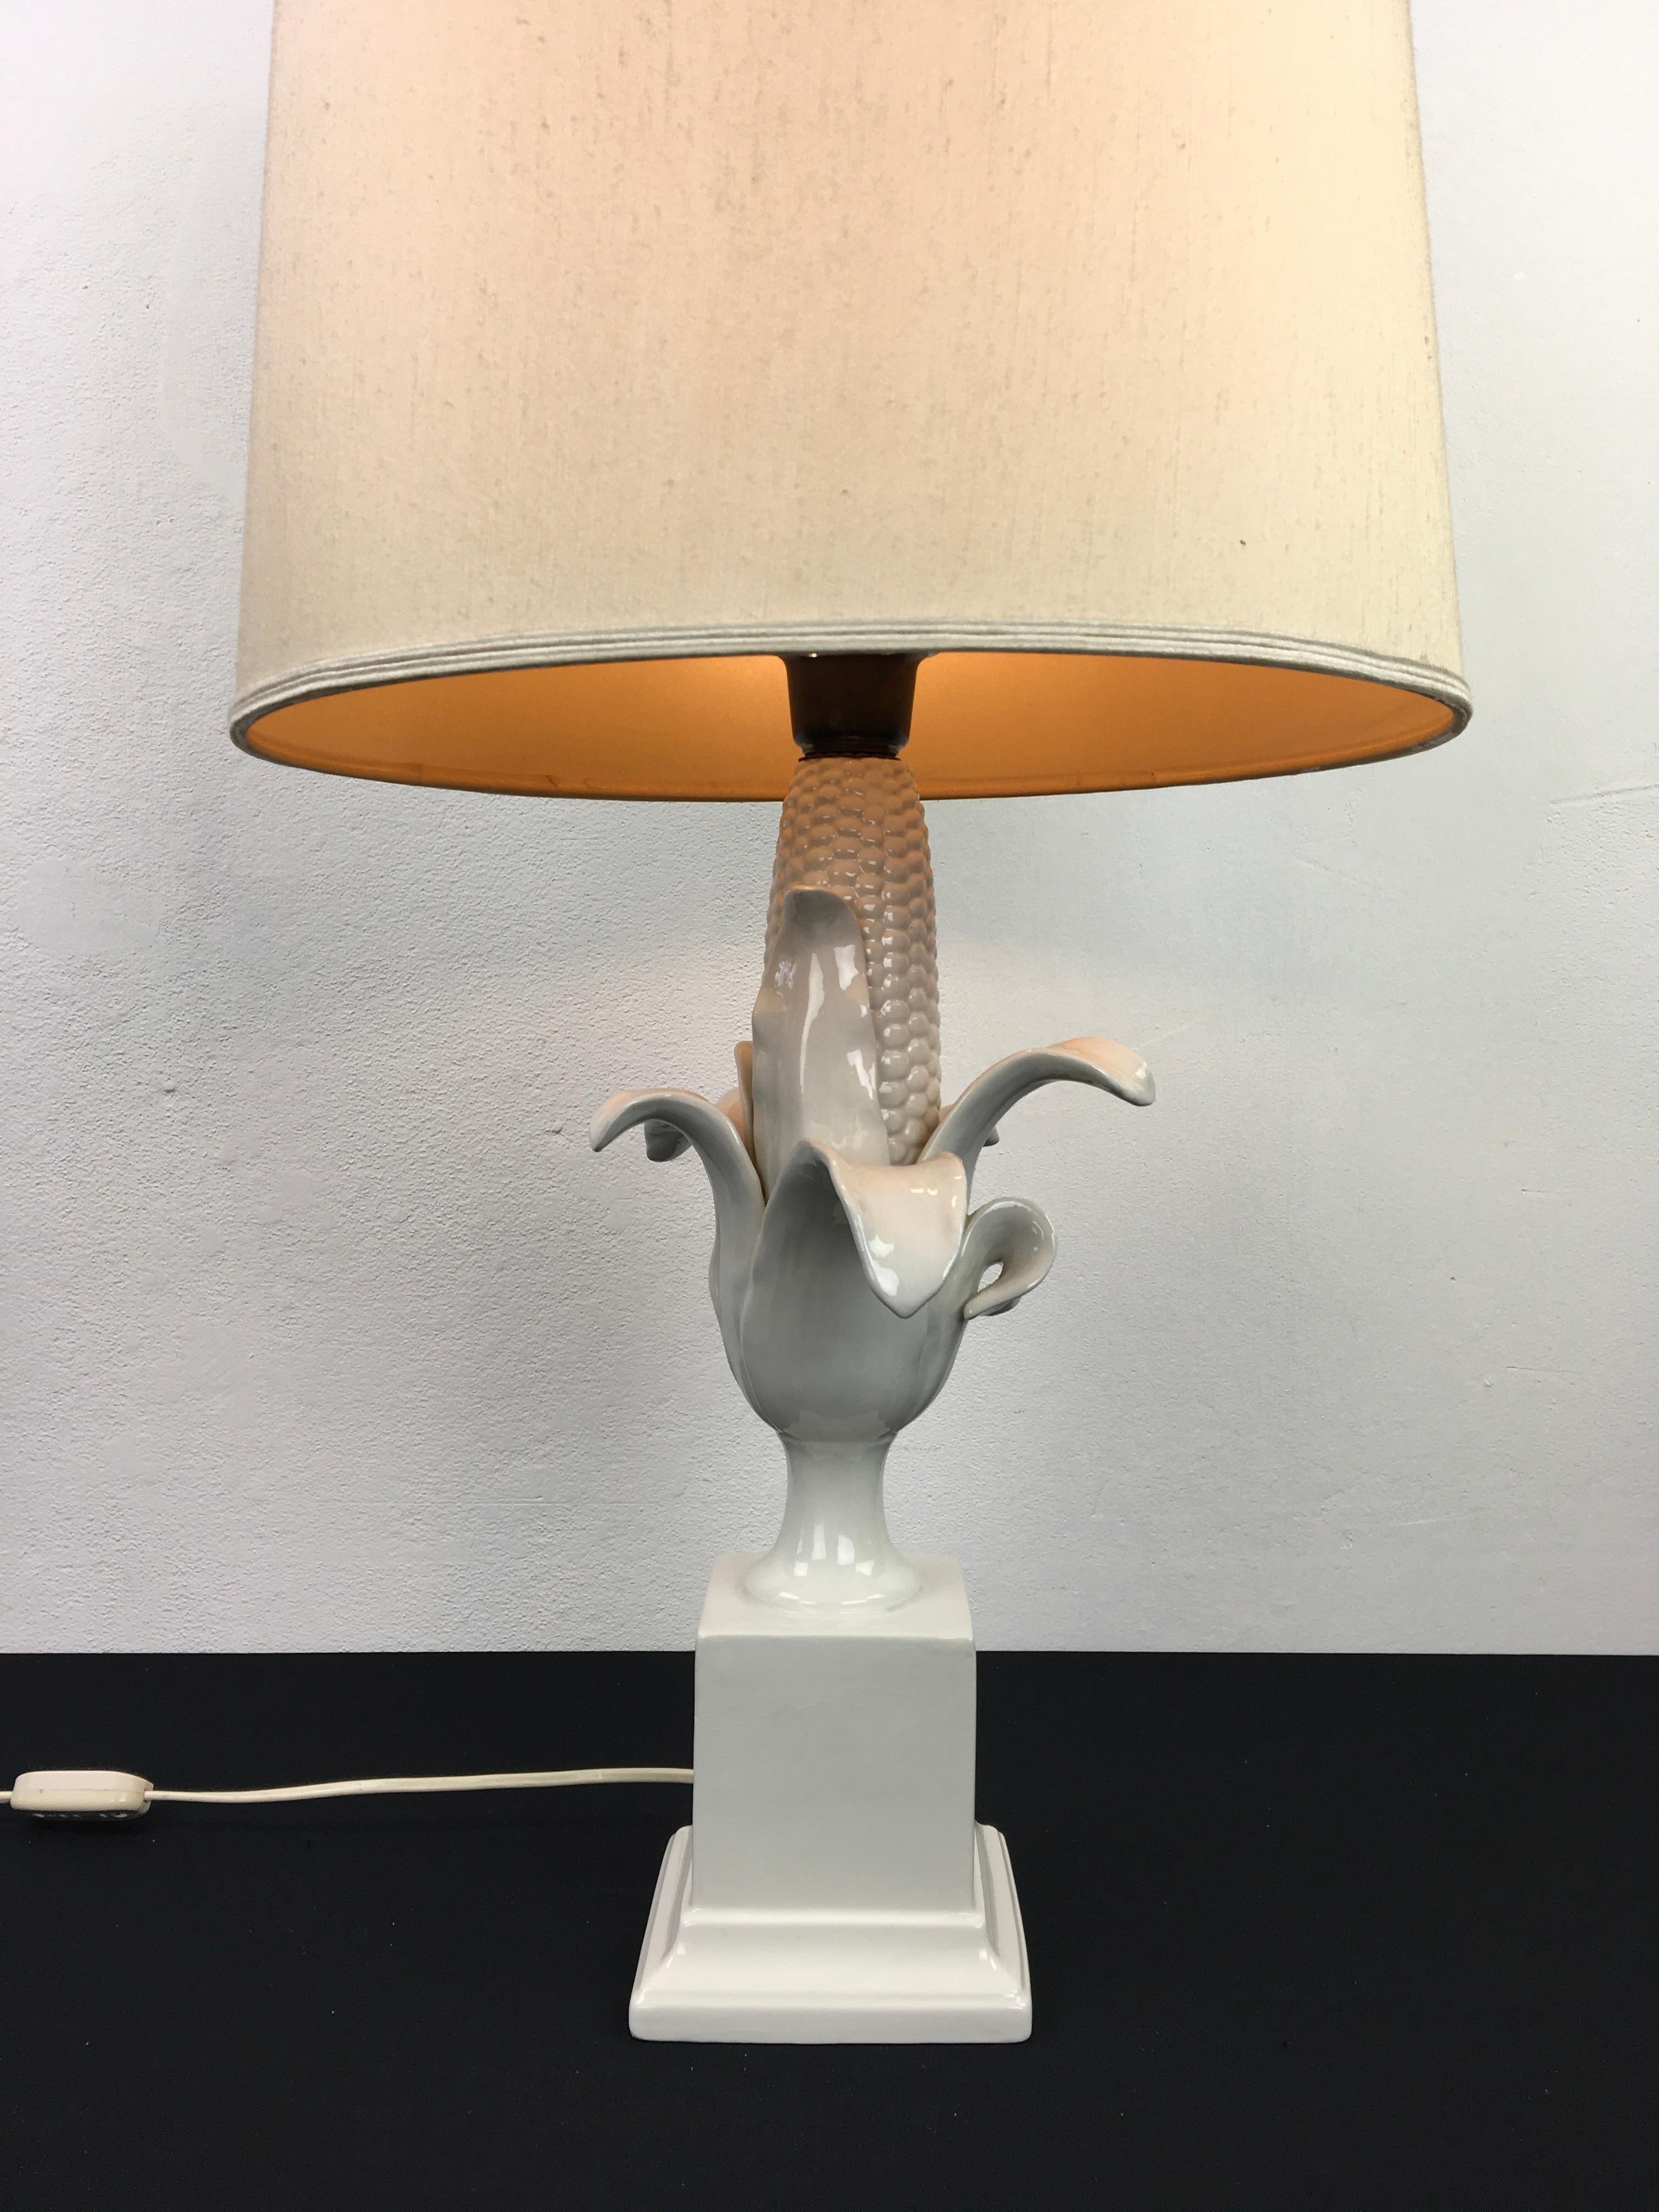 Tischlampe aus Maiskolben, hergestellt in Italien. 
Diese weiße Tischlampe mit Maiskolben aus den 1960er Jahren ist aus Porzellan und wird mit dem Original-Stoffschirm geliefert. 
Eine stilvolle weiße Tischleuchte für Ihr Interieur.